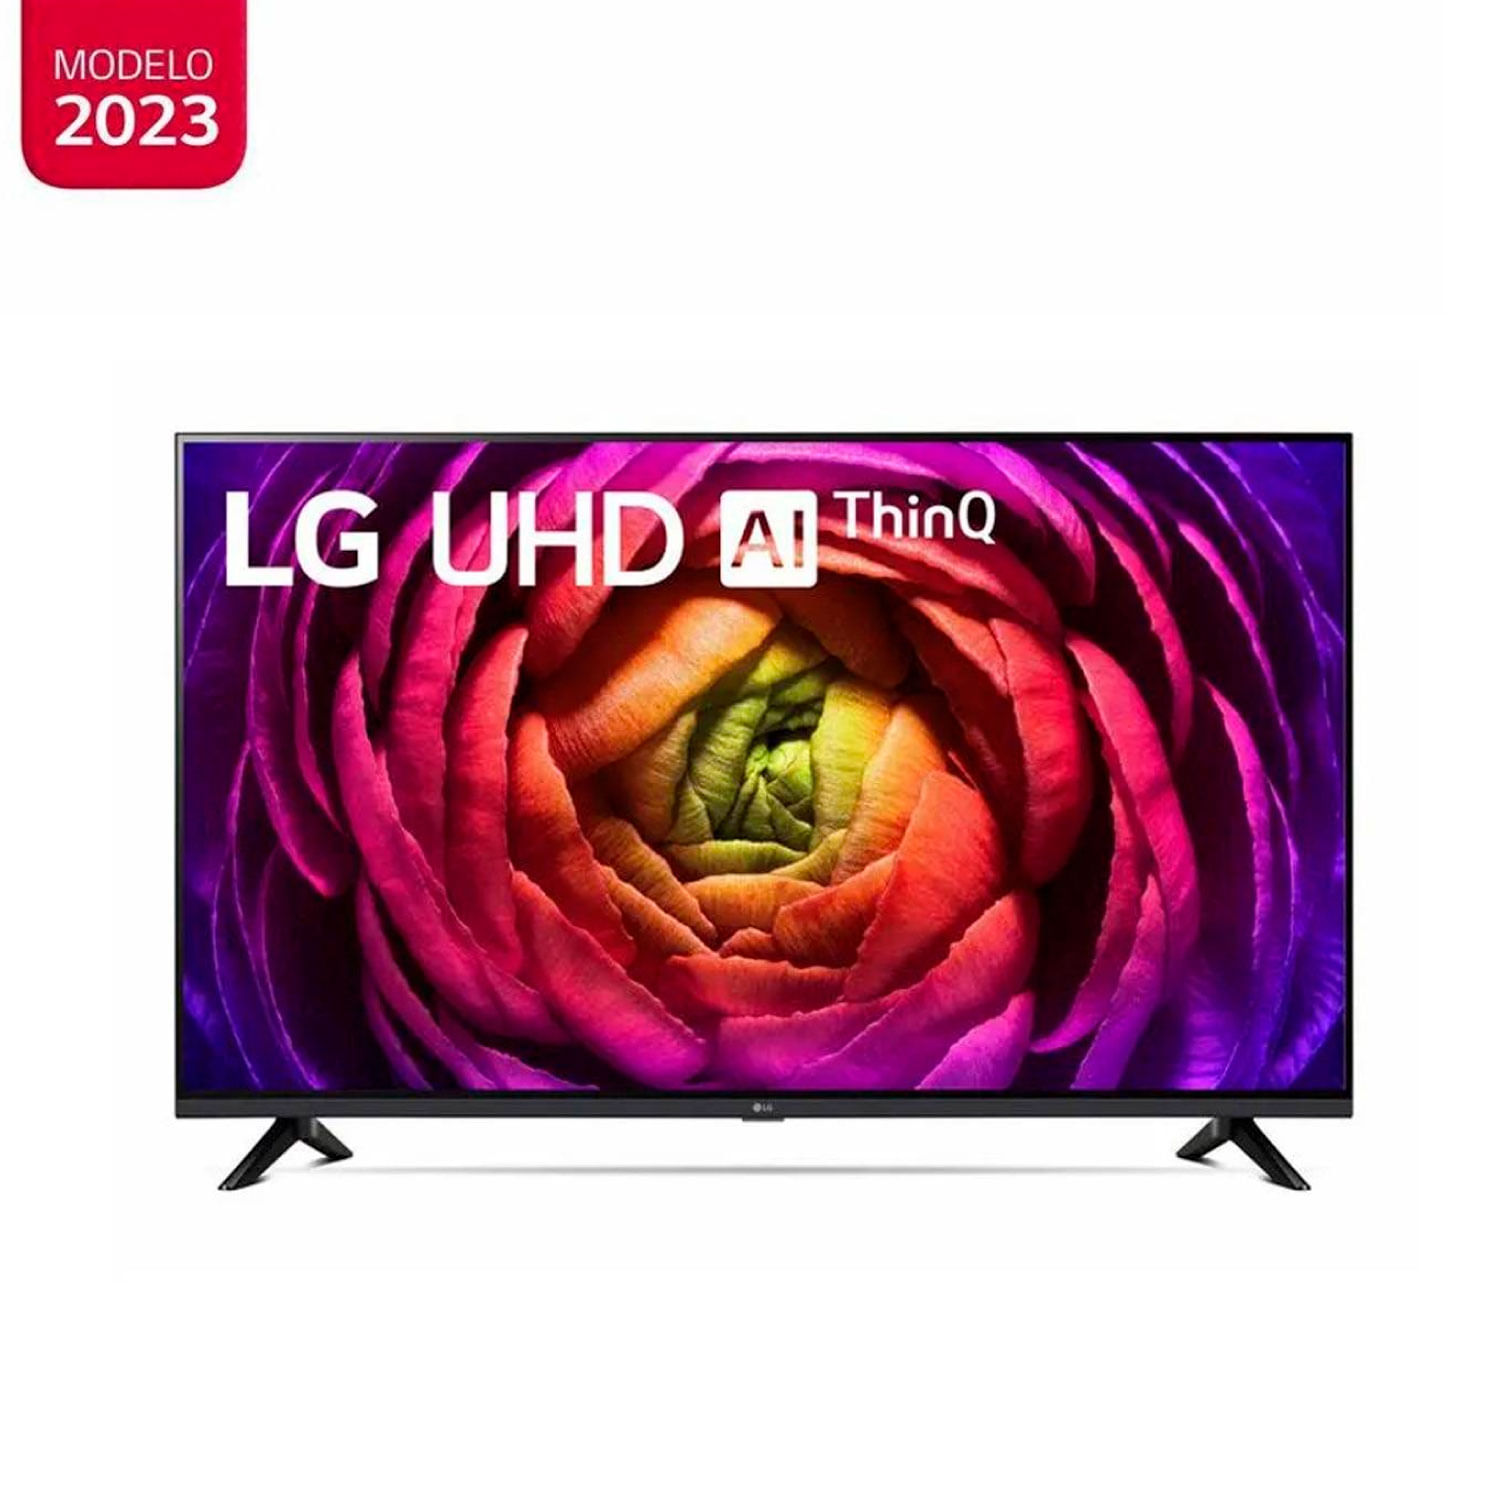 Televisor LG 50 Pulg. LED Smart TV UHD 4K con ThinQ AI 50UR7300PSA